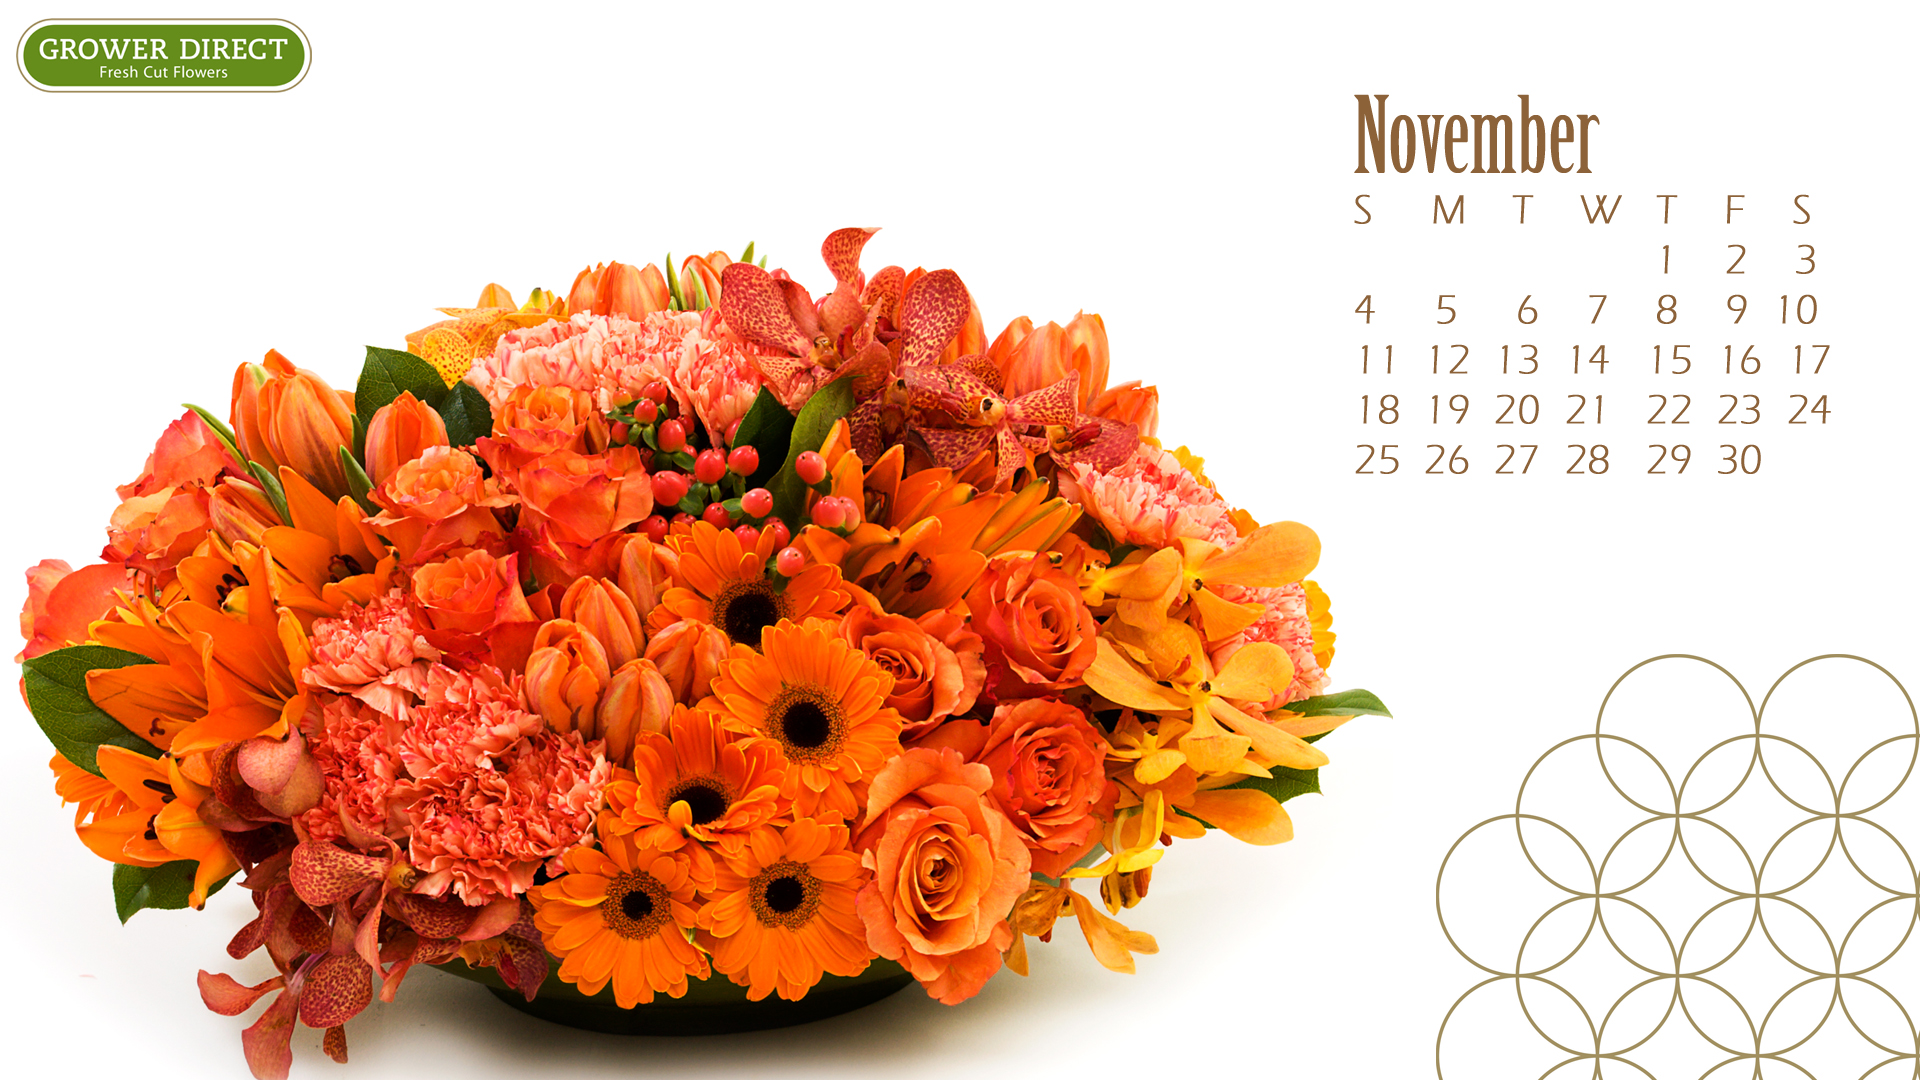 Growers Direct November Calendar 2017 - HD Wallpaper 